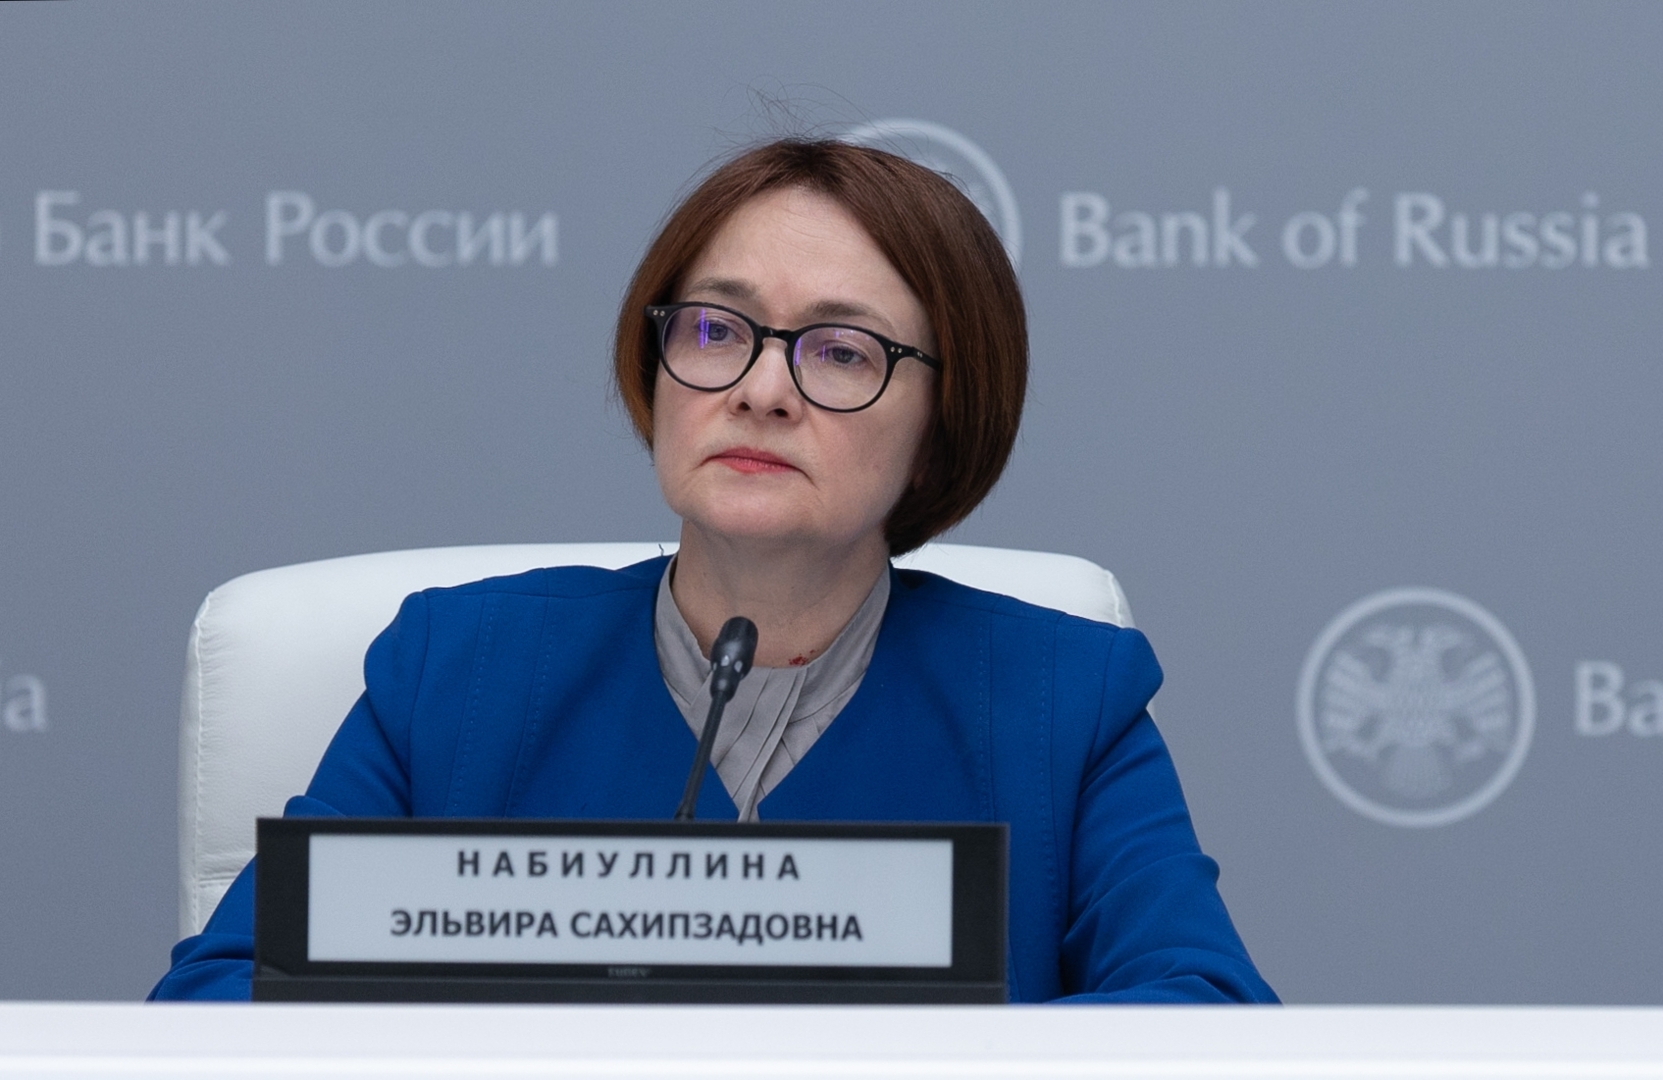 صورة من الأرشيف - رئيسة البنك المركزي الروسي إلفيرا نابيؤلينا